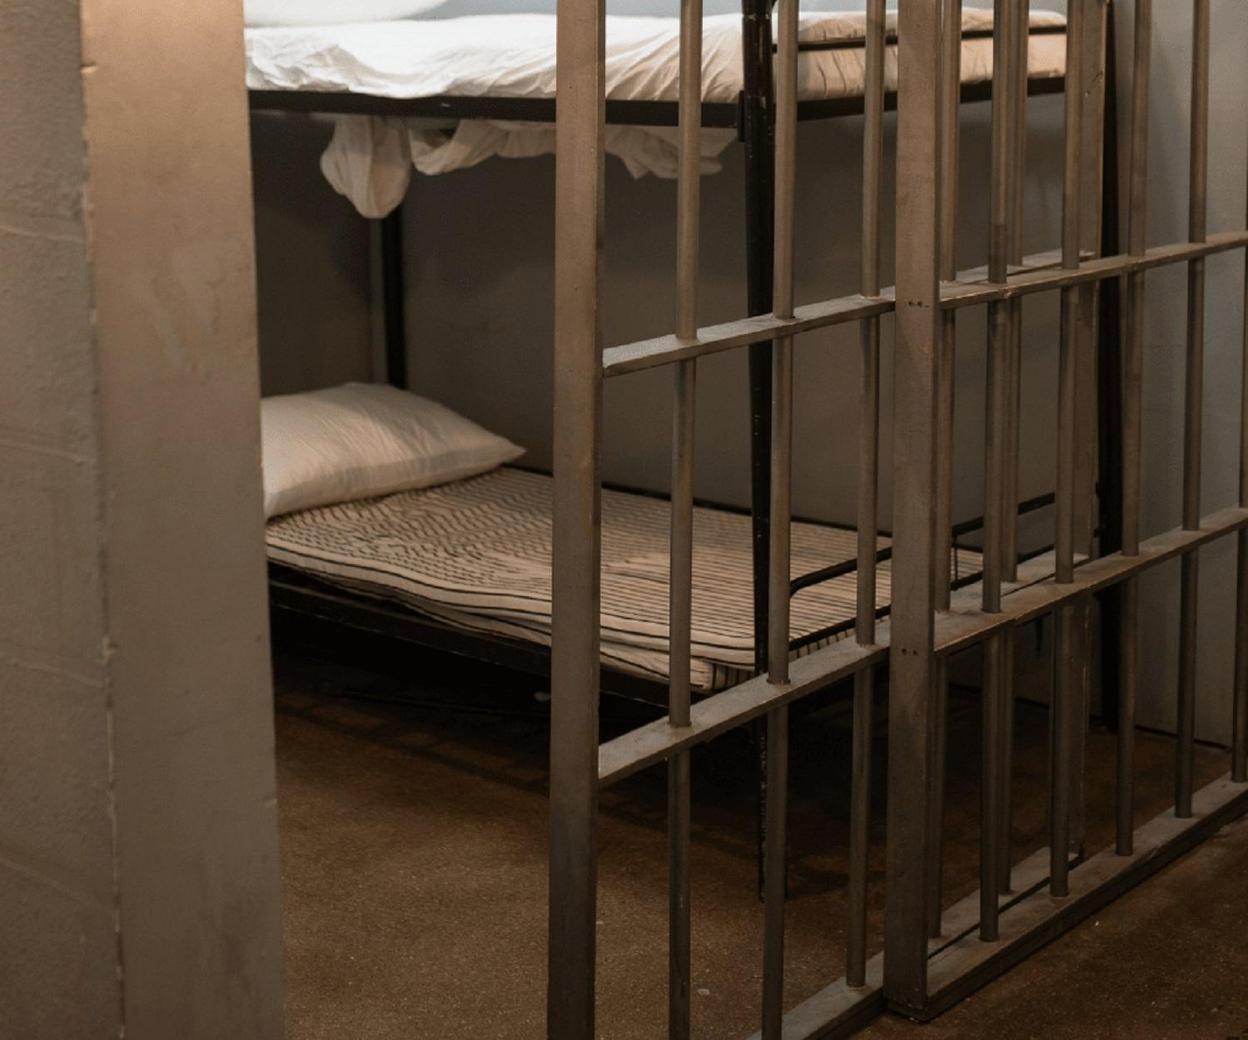 France : Ministère de la Justice.  En France, les prisons sont surpeuplées.  « Des conditions qui se détériorent »